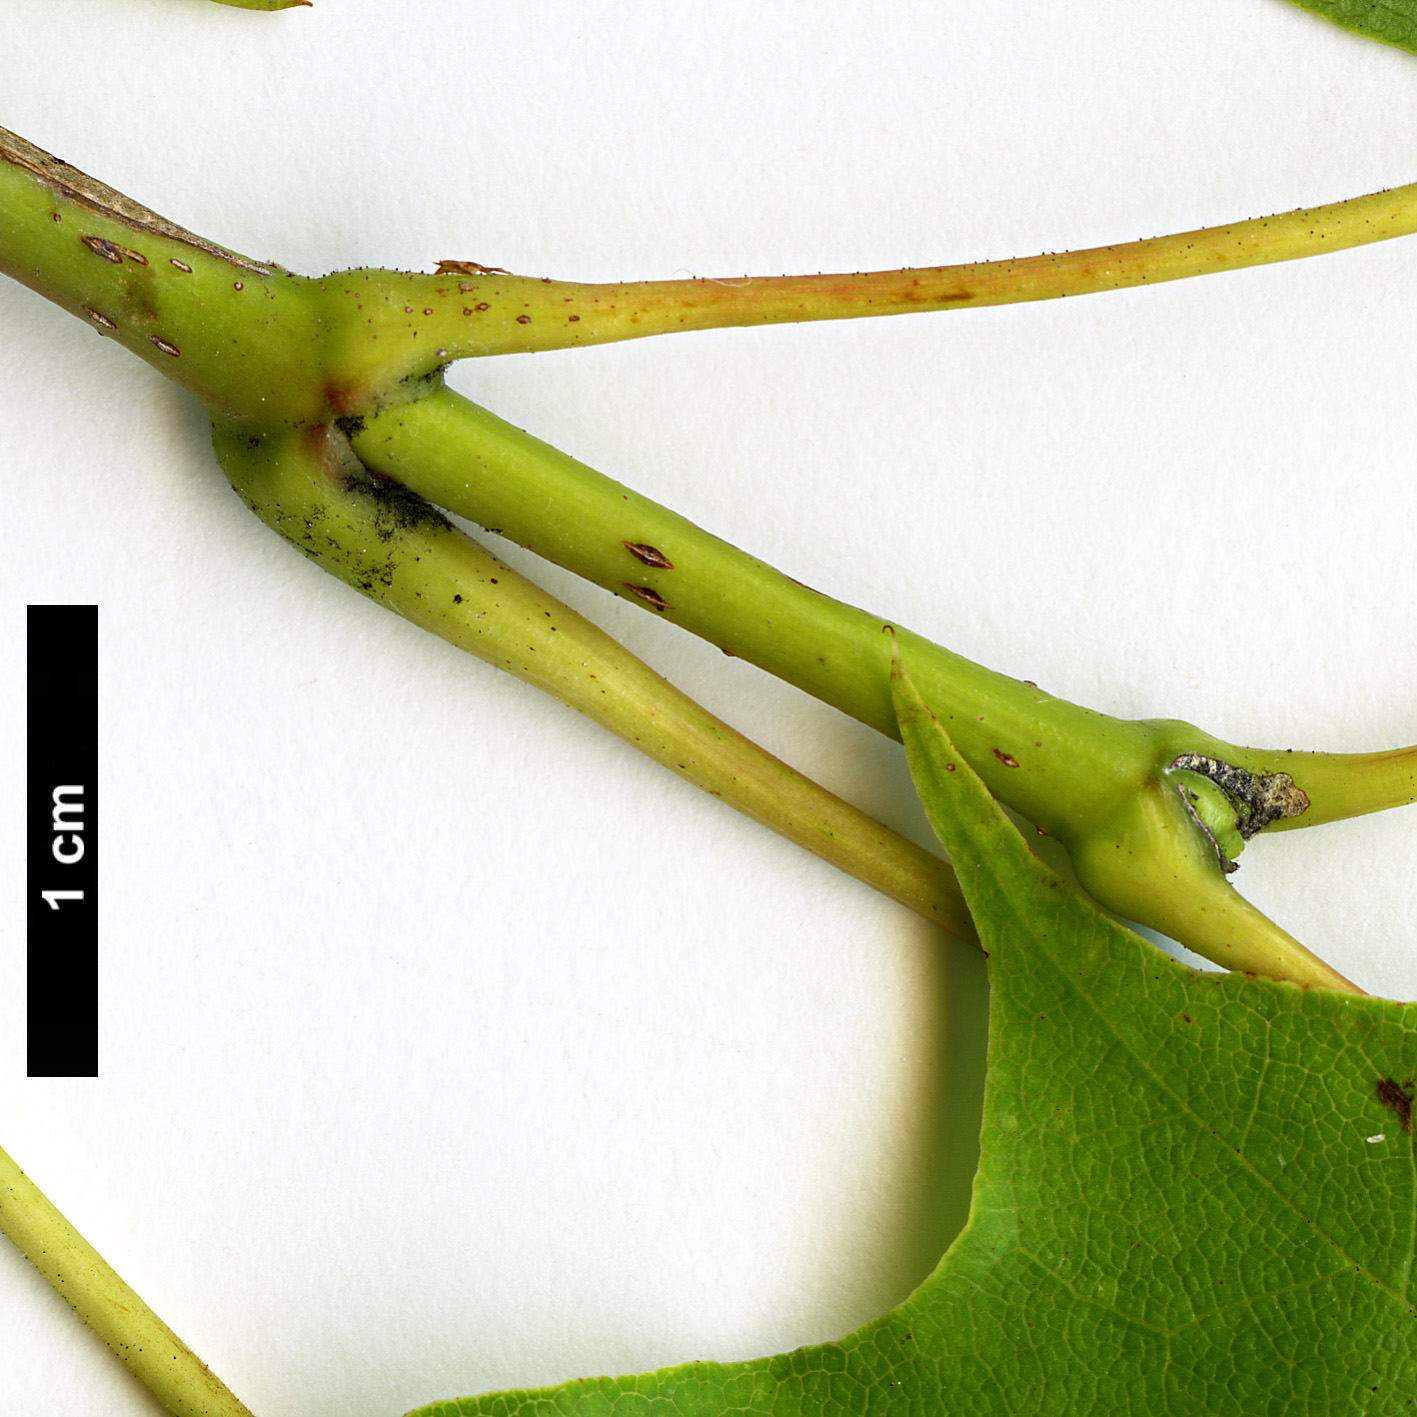 High resolution image: Family: Sapindaceae - Genus: Acer - Taxon: pictum - SpeciesSub: subsp. savatieri